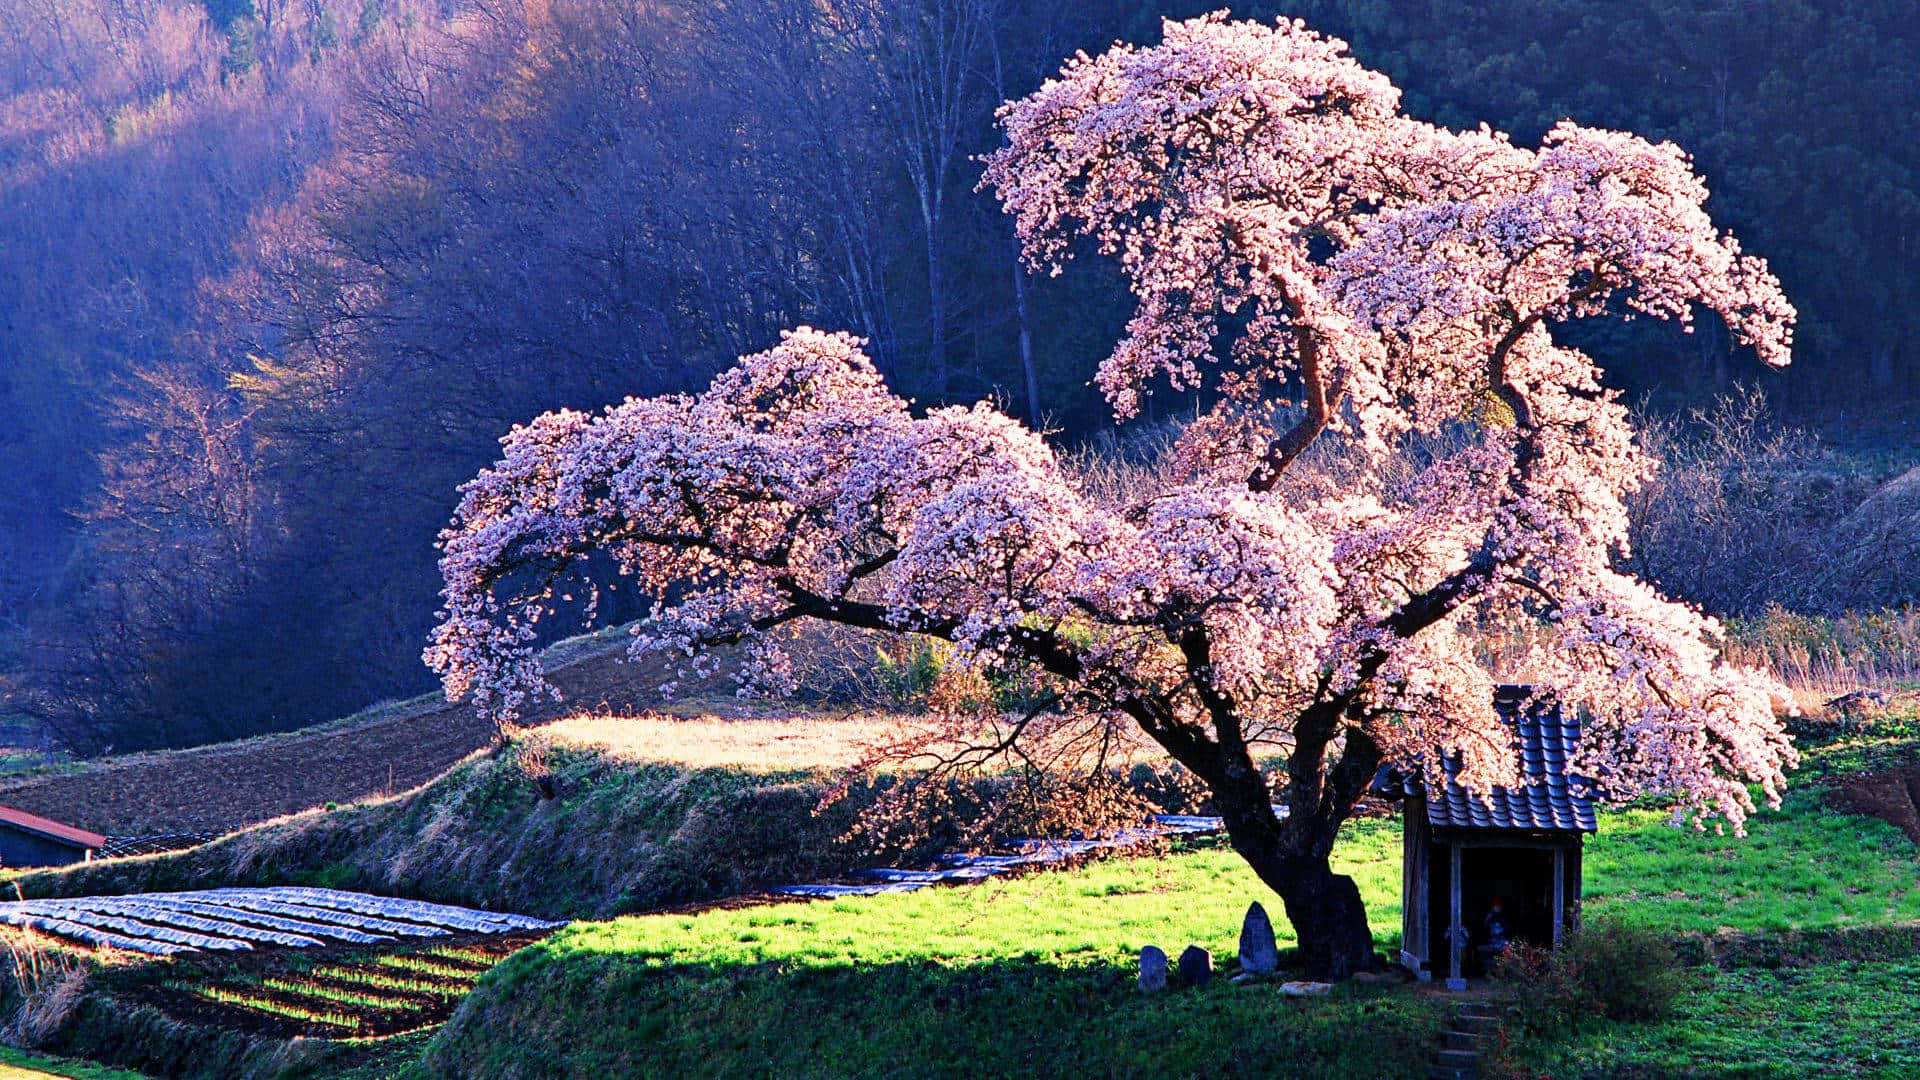 Serene Cherry Blossom Tree in Full Bloom